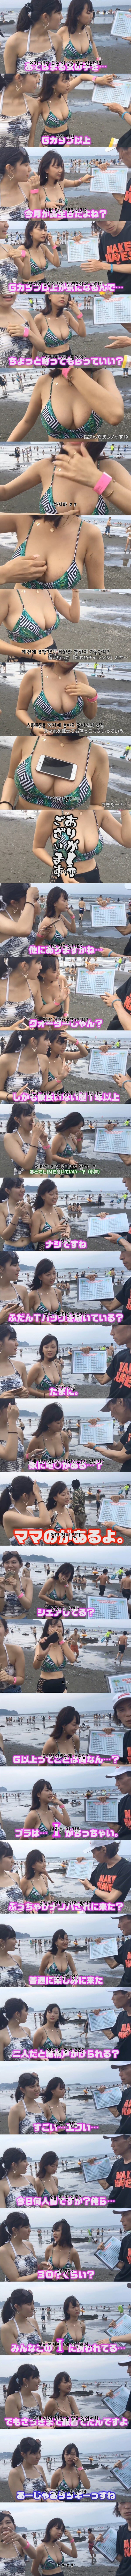 日本水着女インタビュー